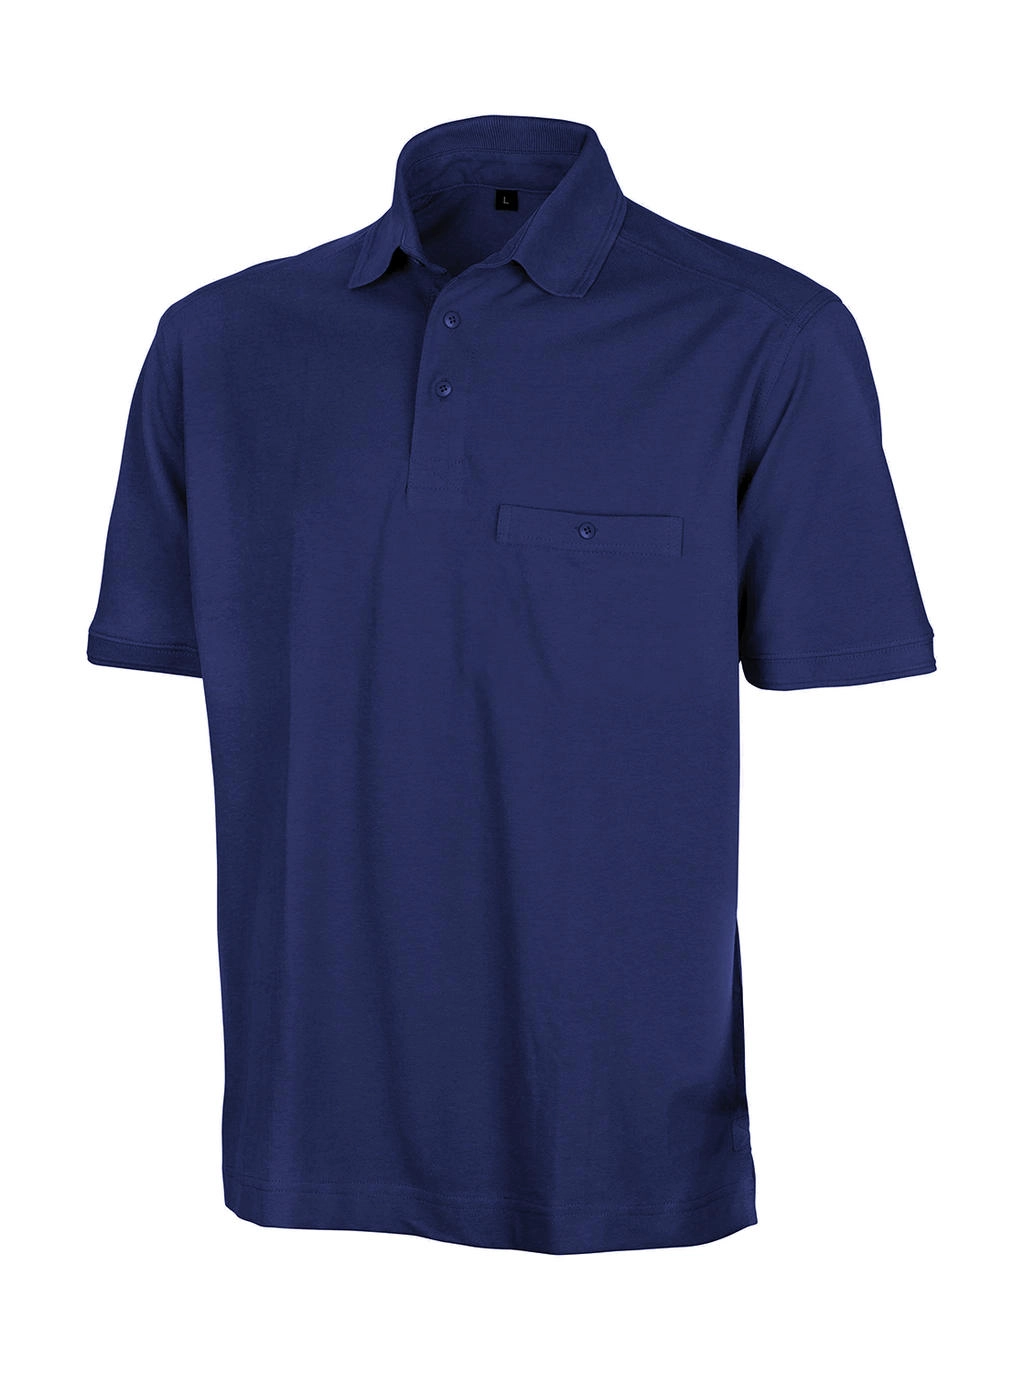 Apex Polo Shirt zum Besticken und Bedrucken in der Farbe Royal mit Ihren Logo, Schriftzug oder Motiv.